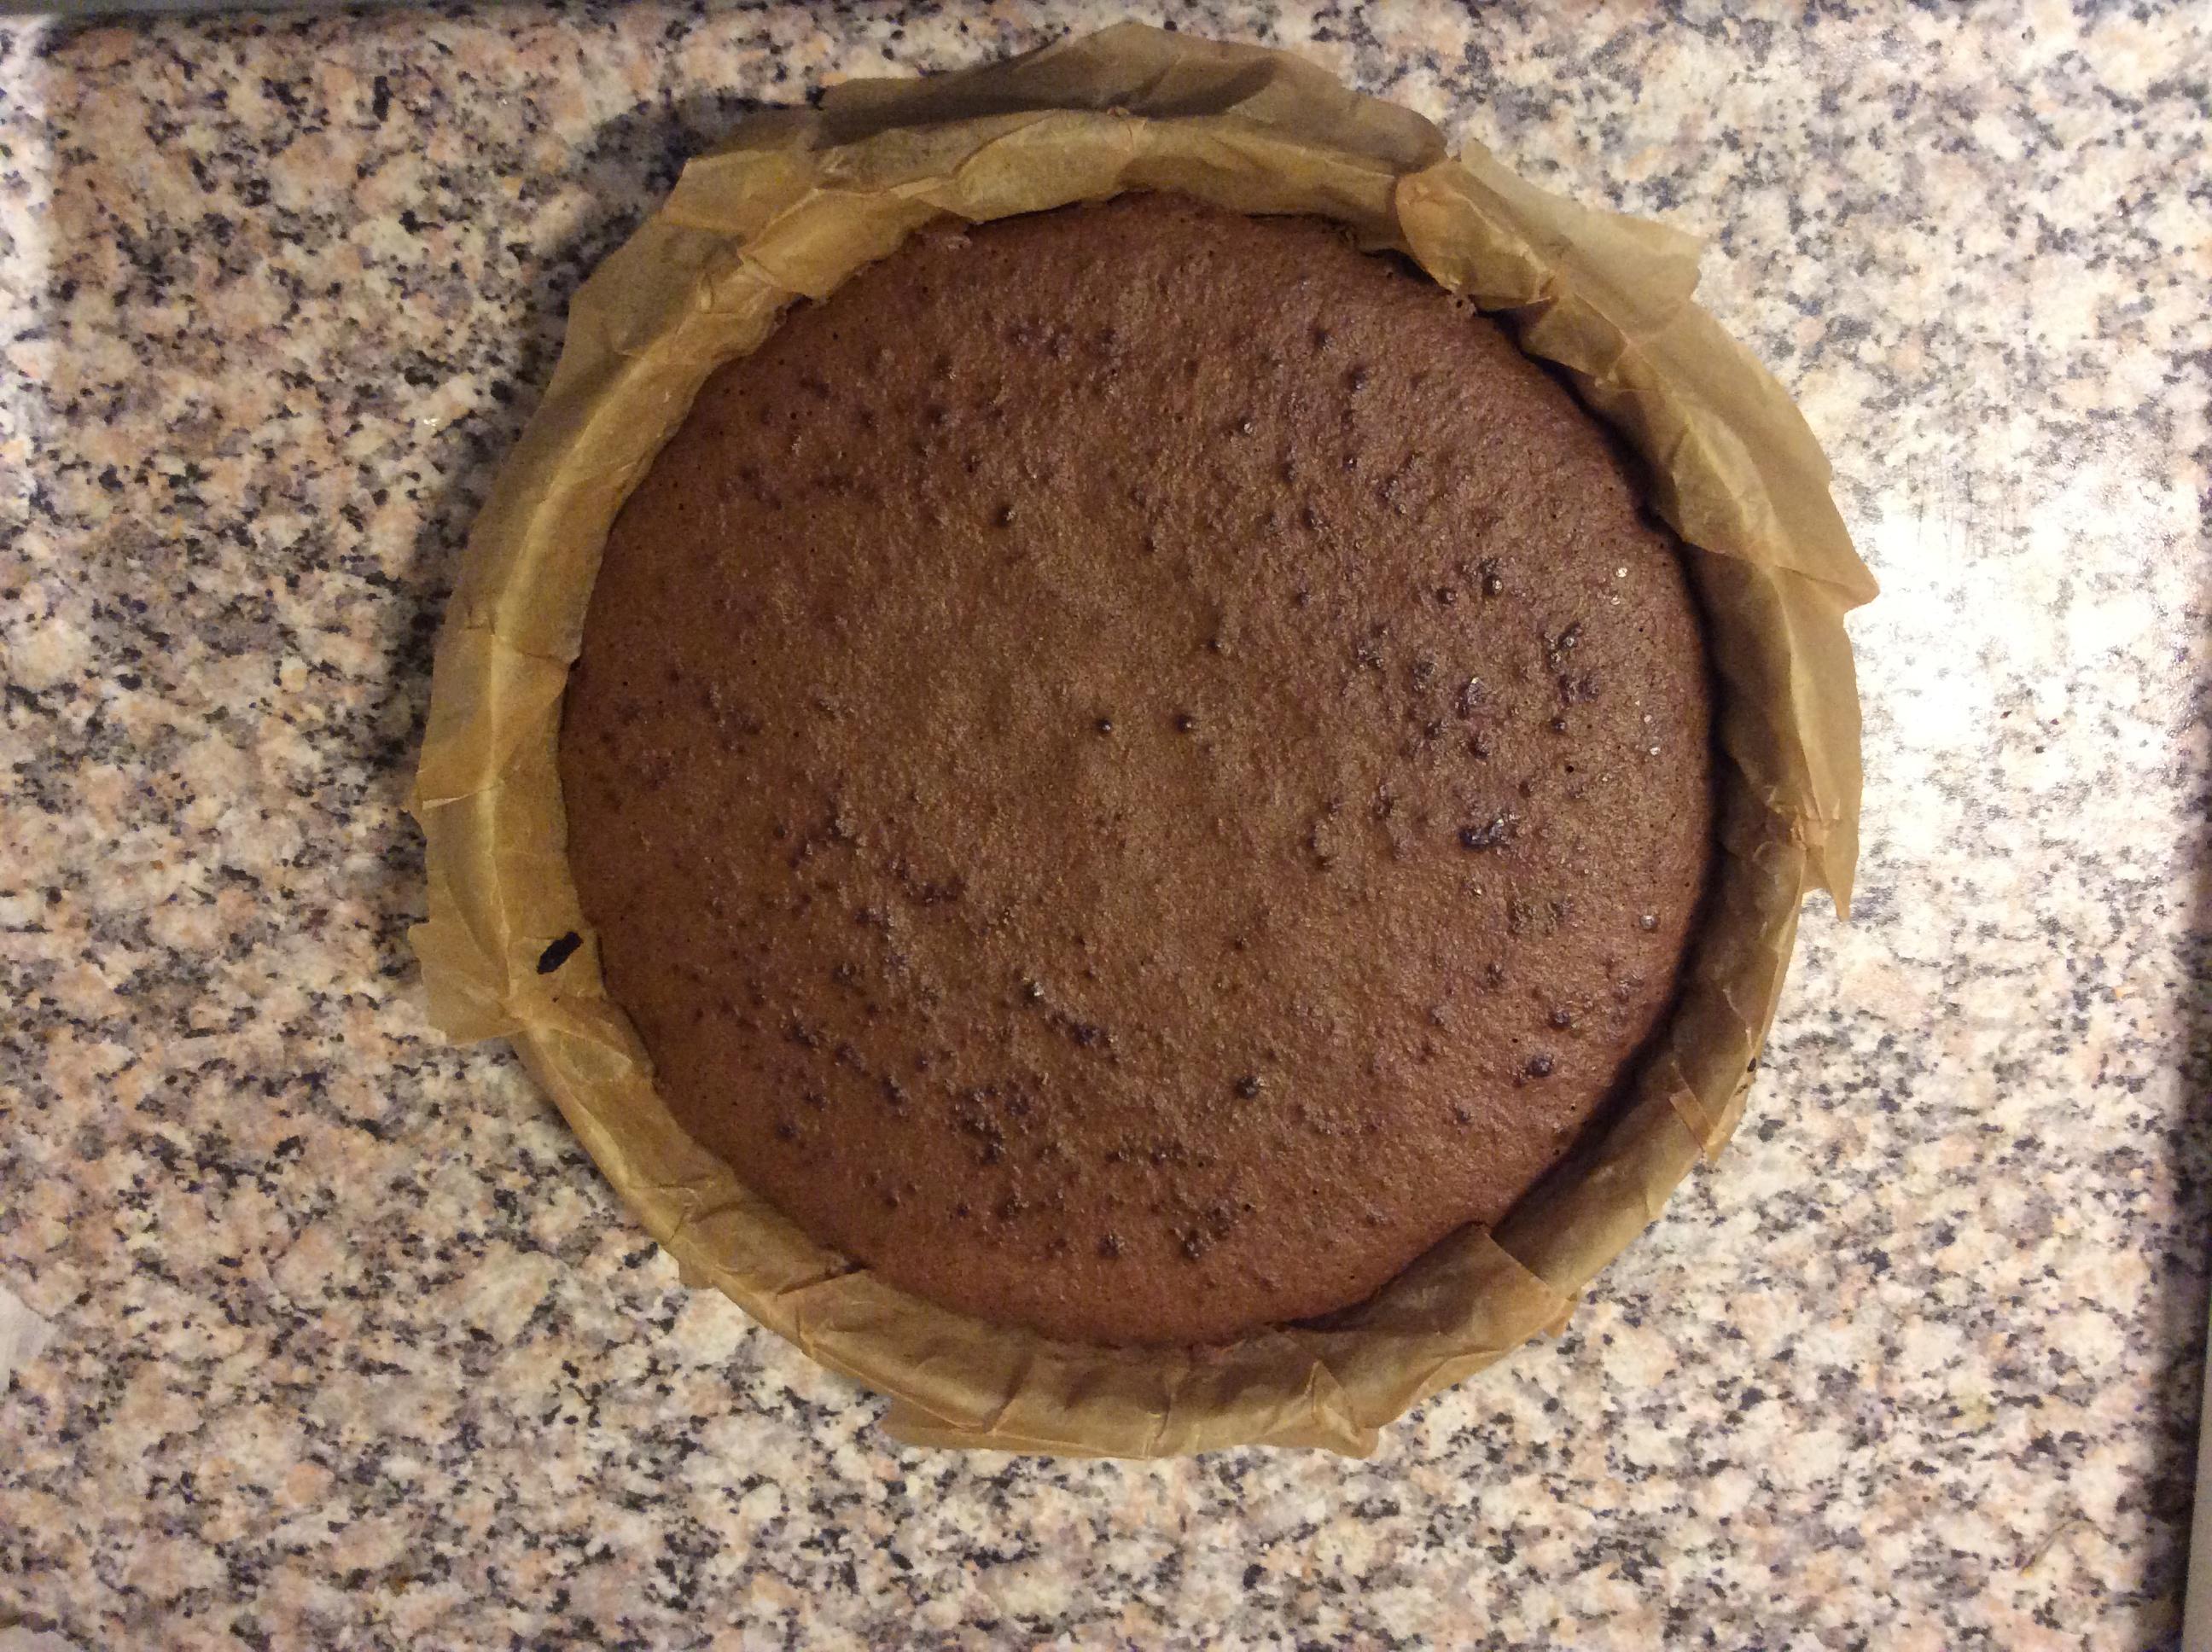 摩卡巧克力蛋糕